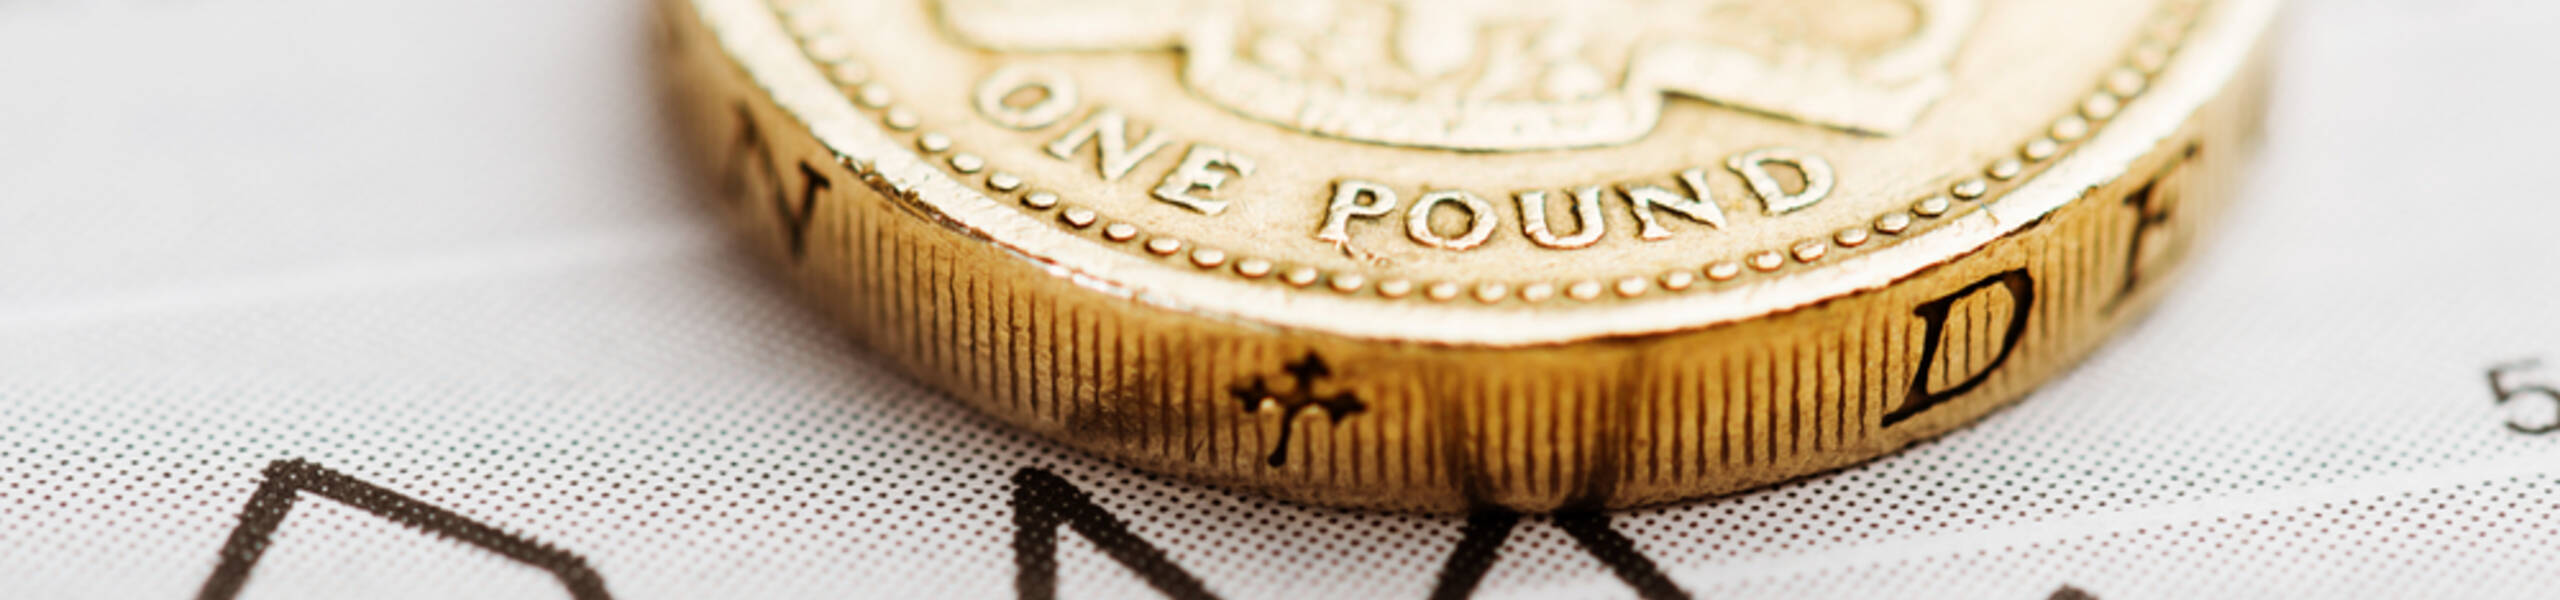 GBP / USD: Curva de coronavírus do Reino Unido e Relações Internacionais pesam sobre a libra